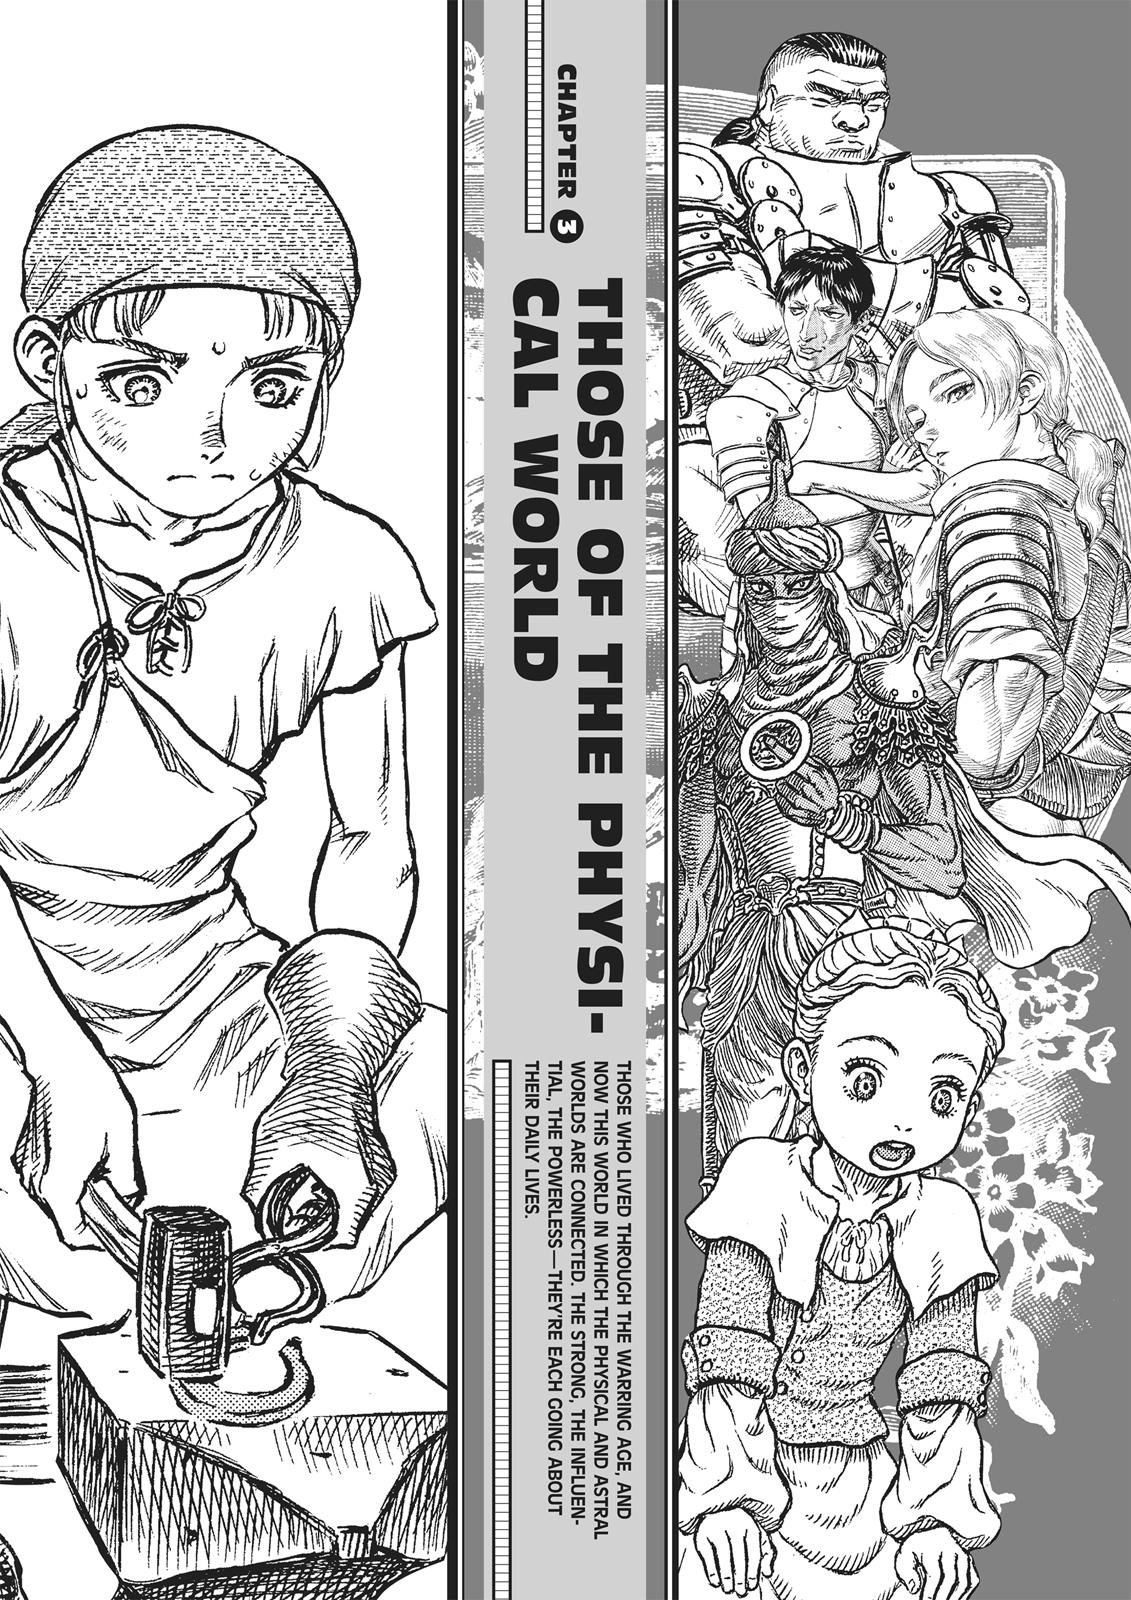 Berserk Manga Chapter 350.5 image 087